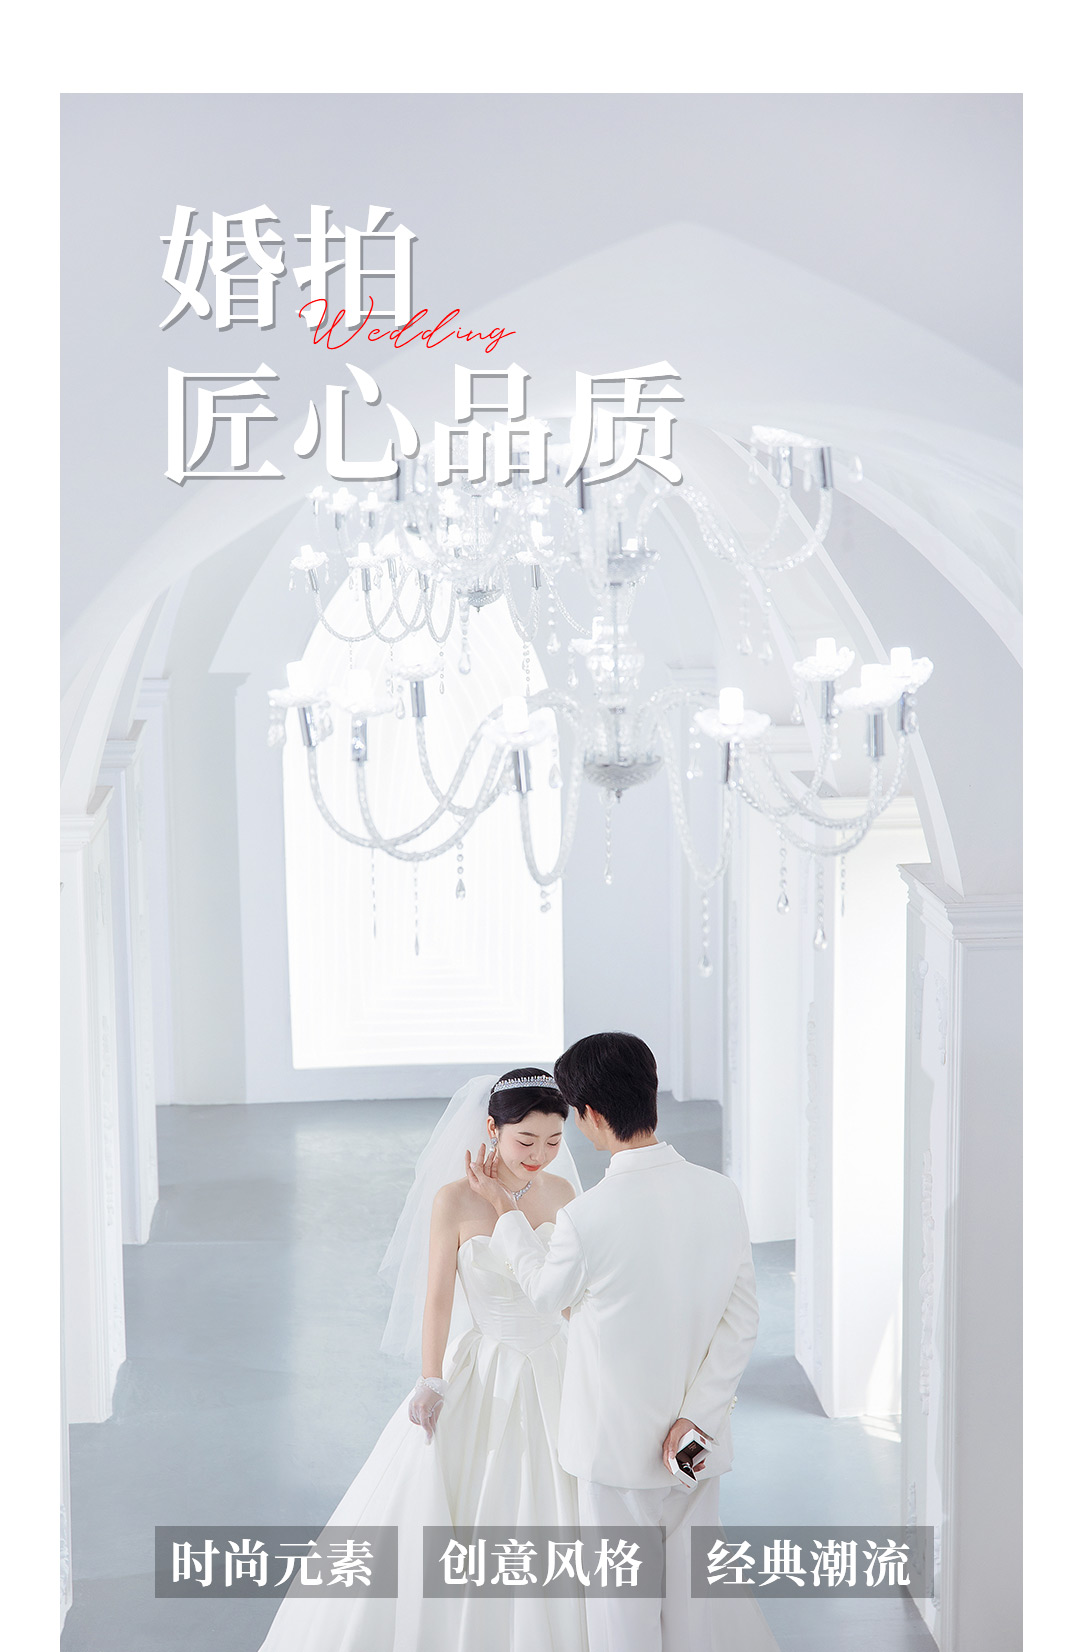 【限时特惠】中国新娘|城市潮拍系列|韩式婚纱照